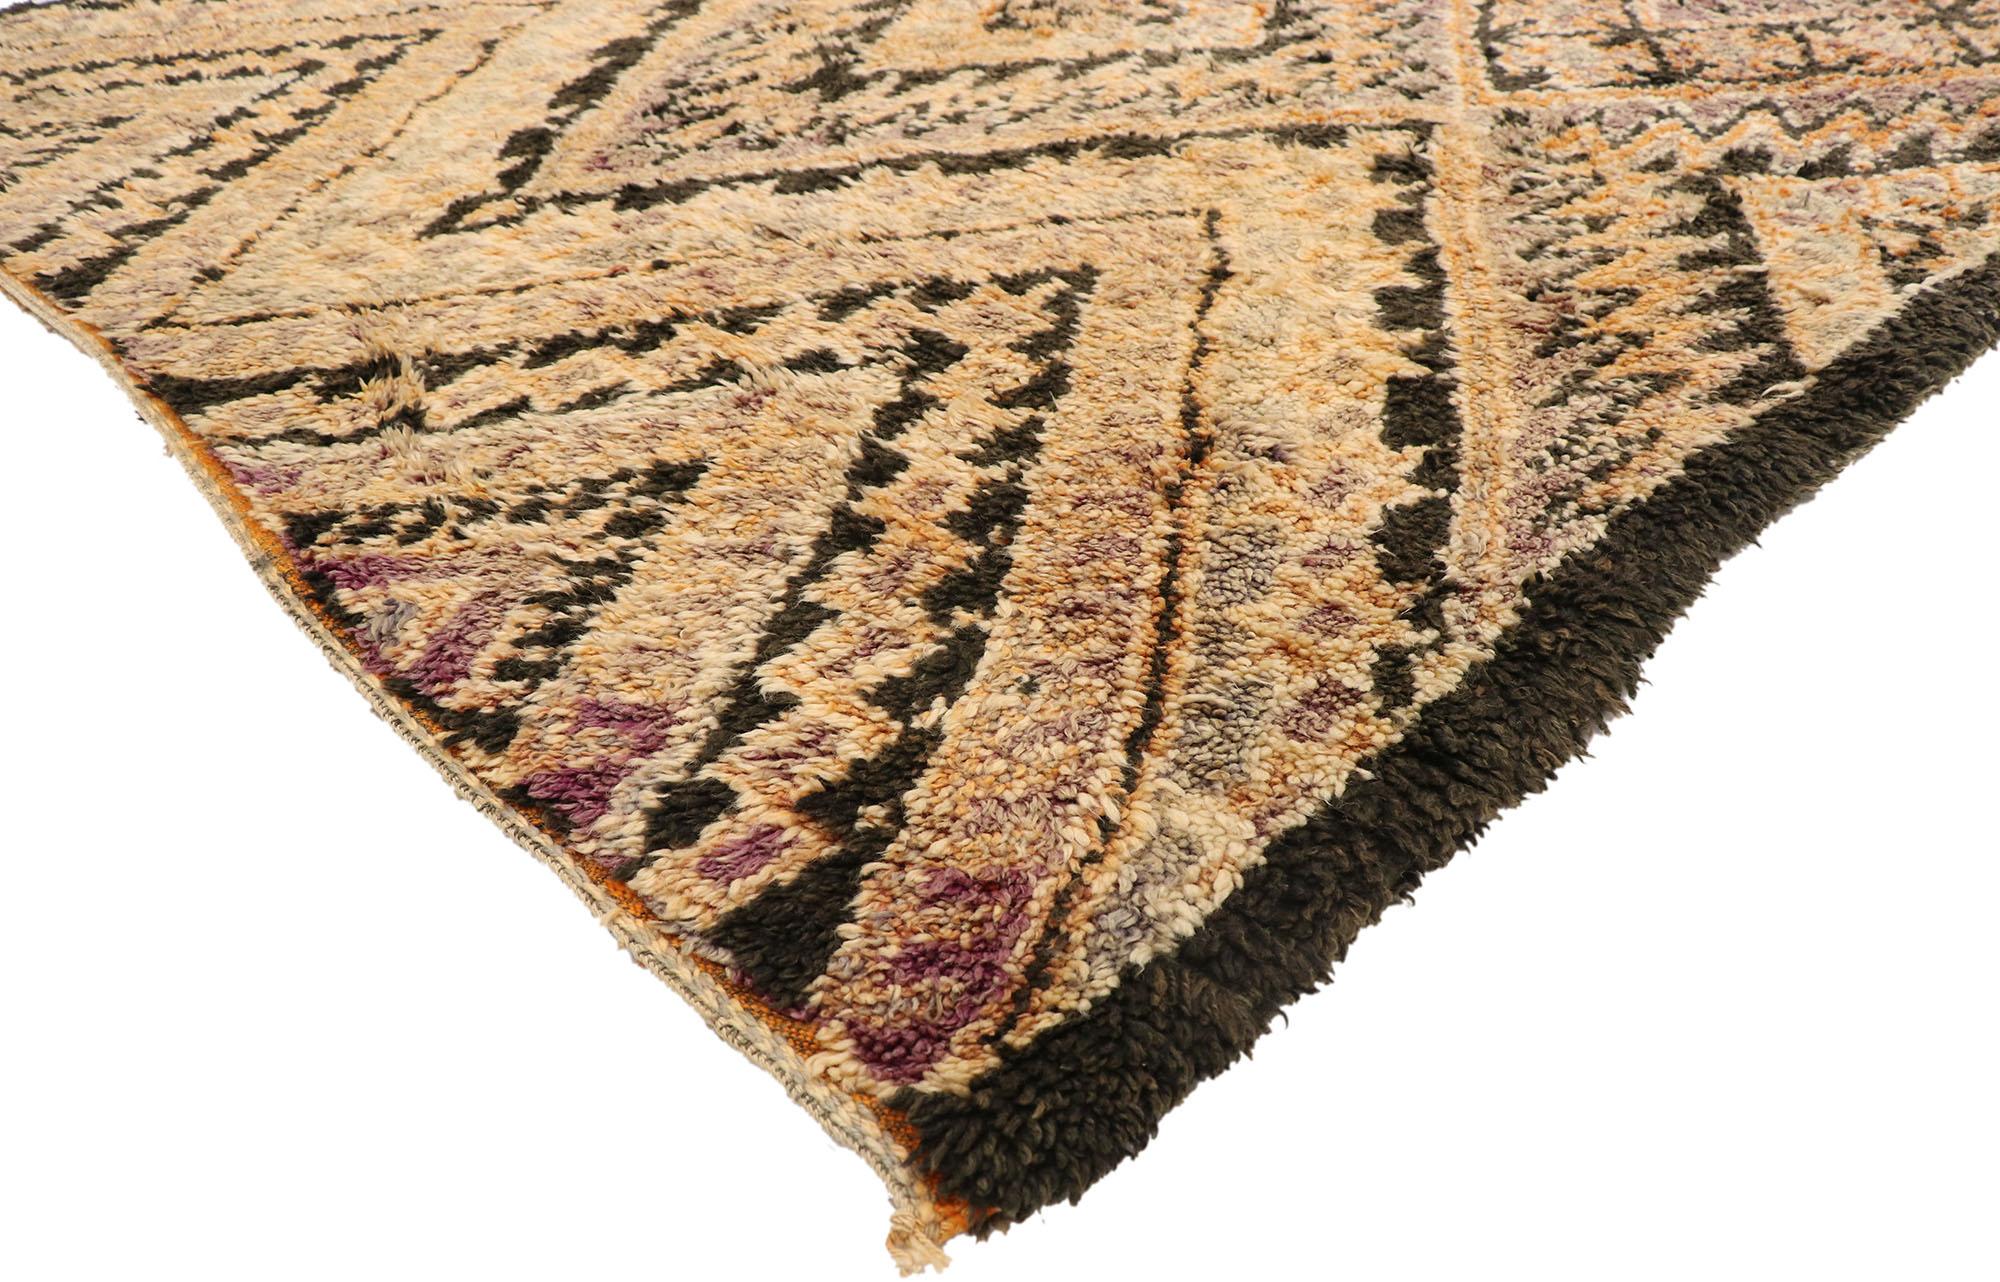 21022 Vintage Braun Beni MGuild Marokkanischer Teppich, 06'10 x 16'09. 
Bereiten Sie sich auf ein faszinierendes Abenteuer vor, das Sie in die warme Atmosphäre dieses handgeknüpften marokkanischen Beni MGuild-Teppichs aus Wolle eintauchen lässt.